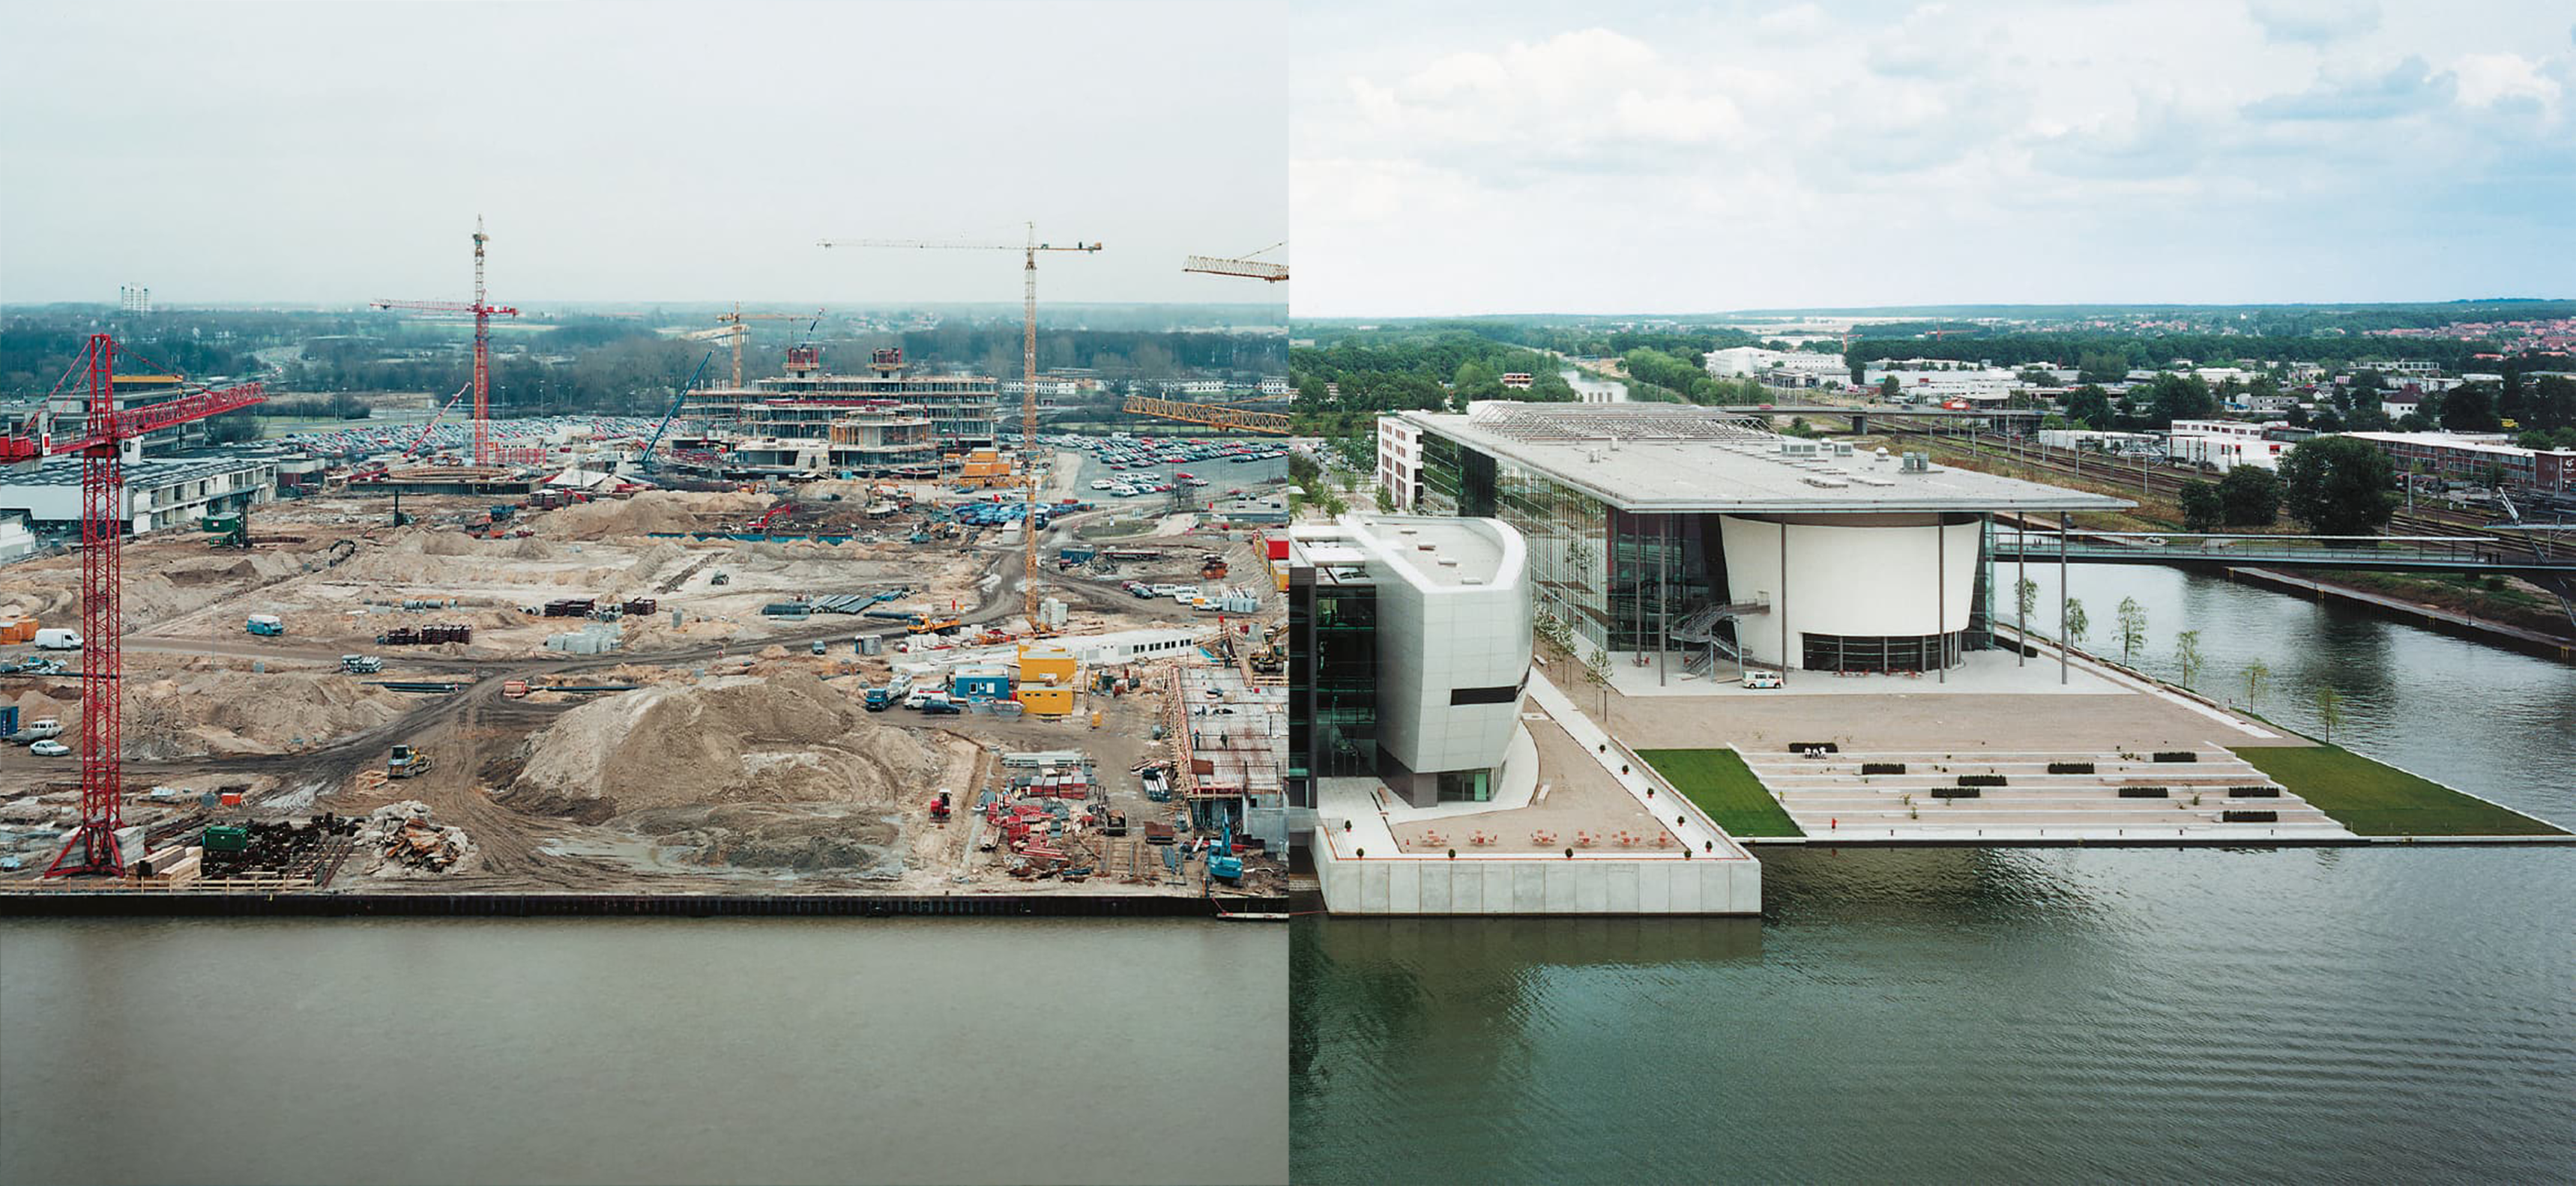 Collage aus zwei Bildern. Links: Eine Groß-Baustelle am Wasser. Rechts: Die fertig-gebaute Autostadt am Wasser.